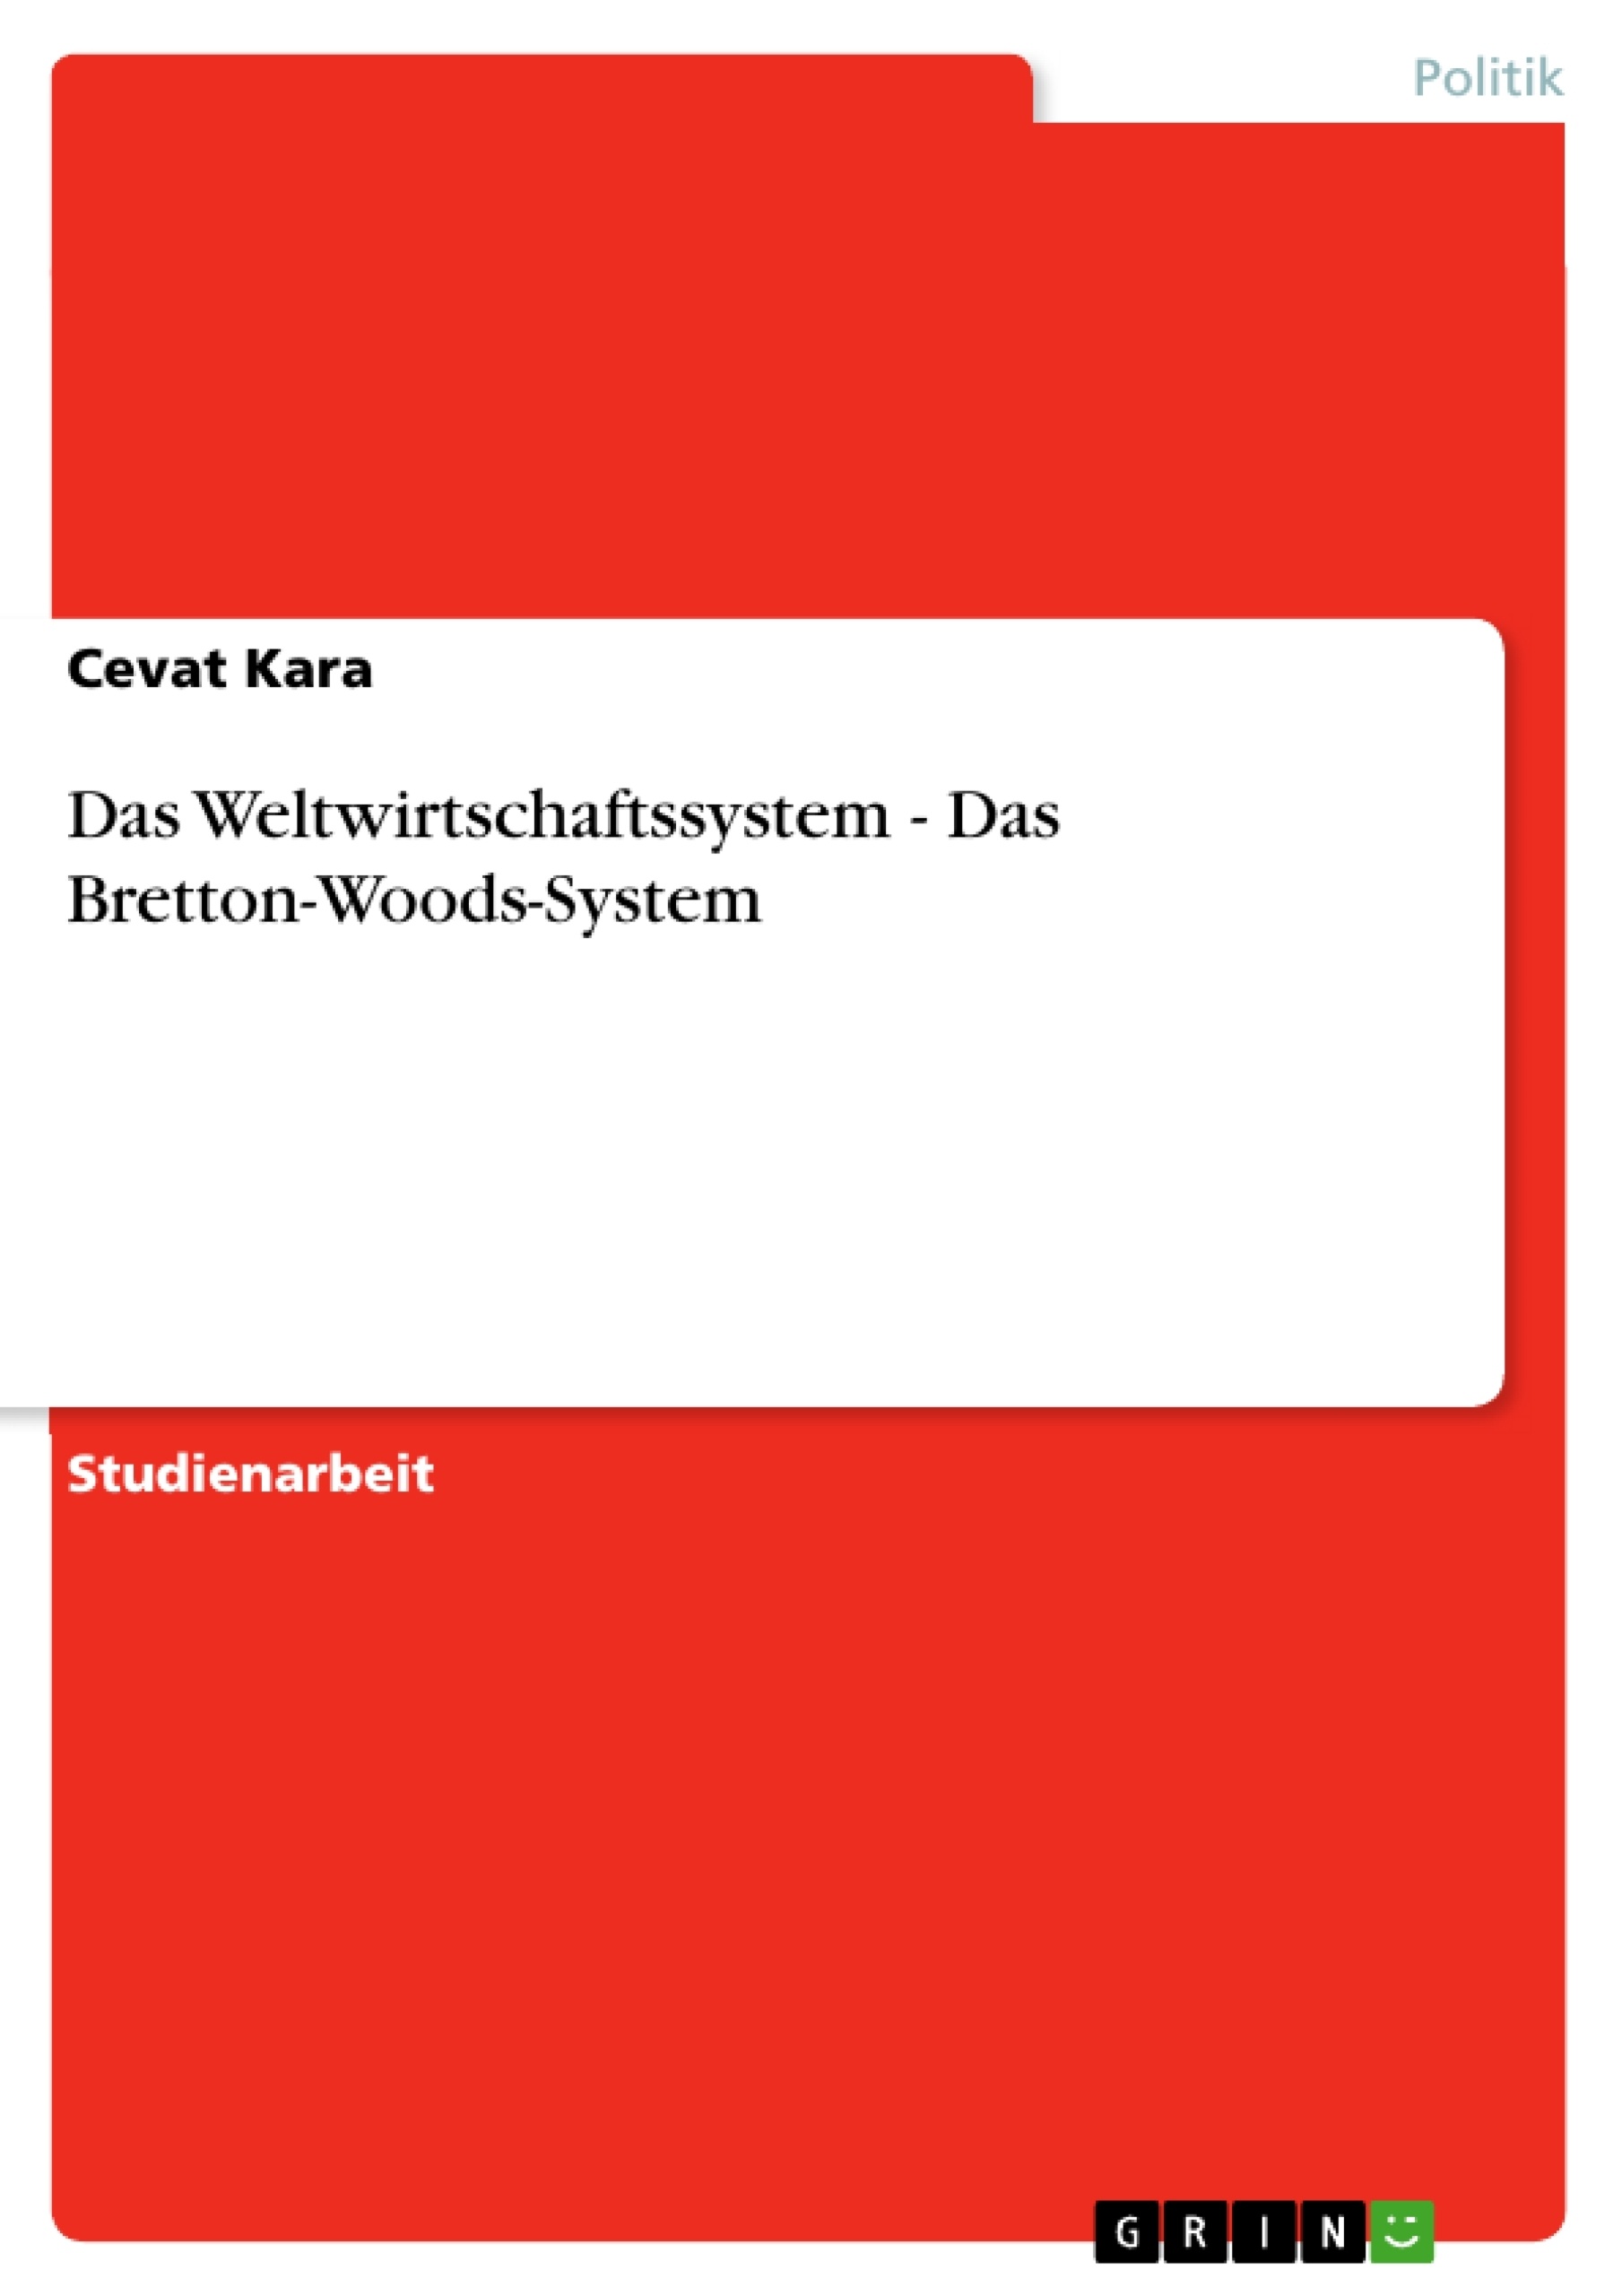 Titre: Das Weltwirtschaftssystem - Das Bretton-Woods-System